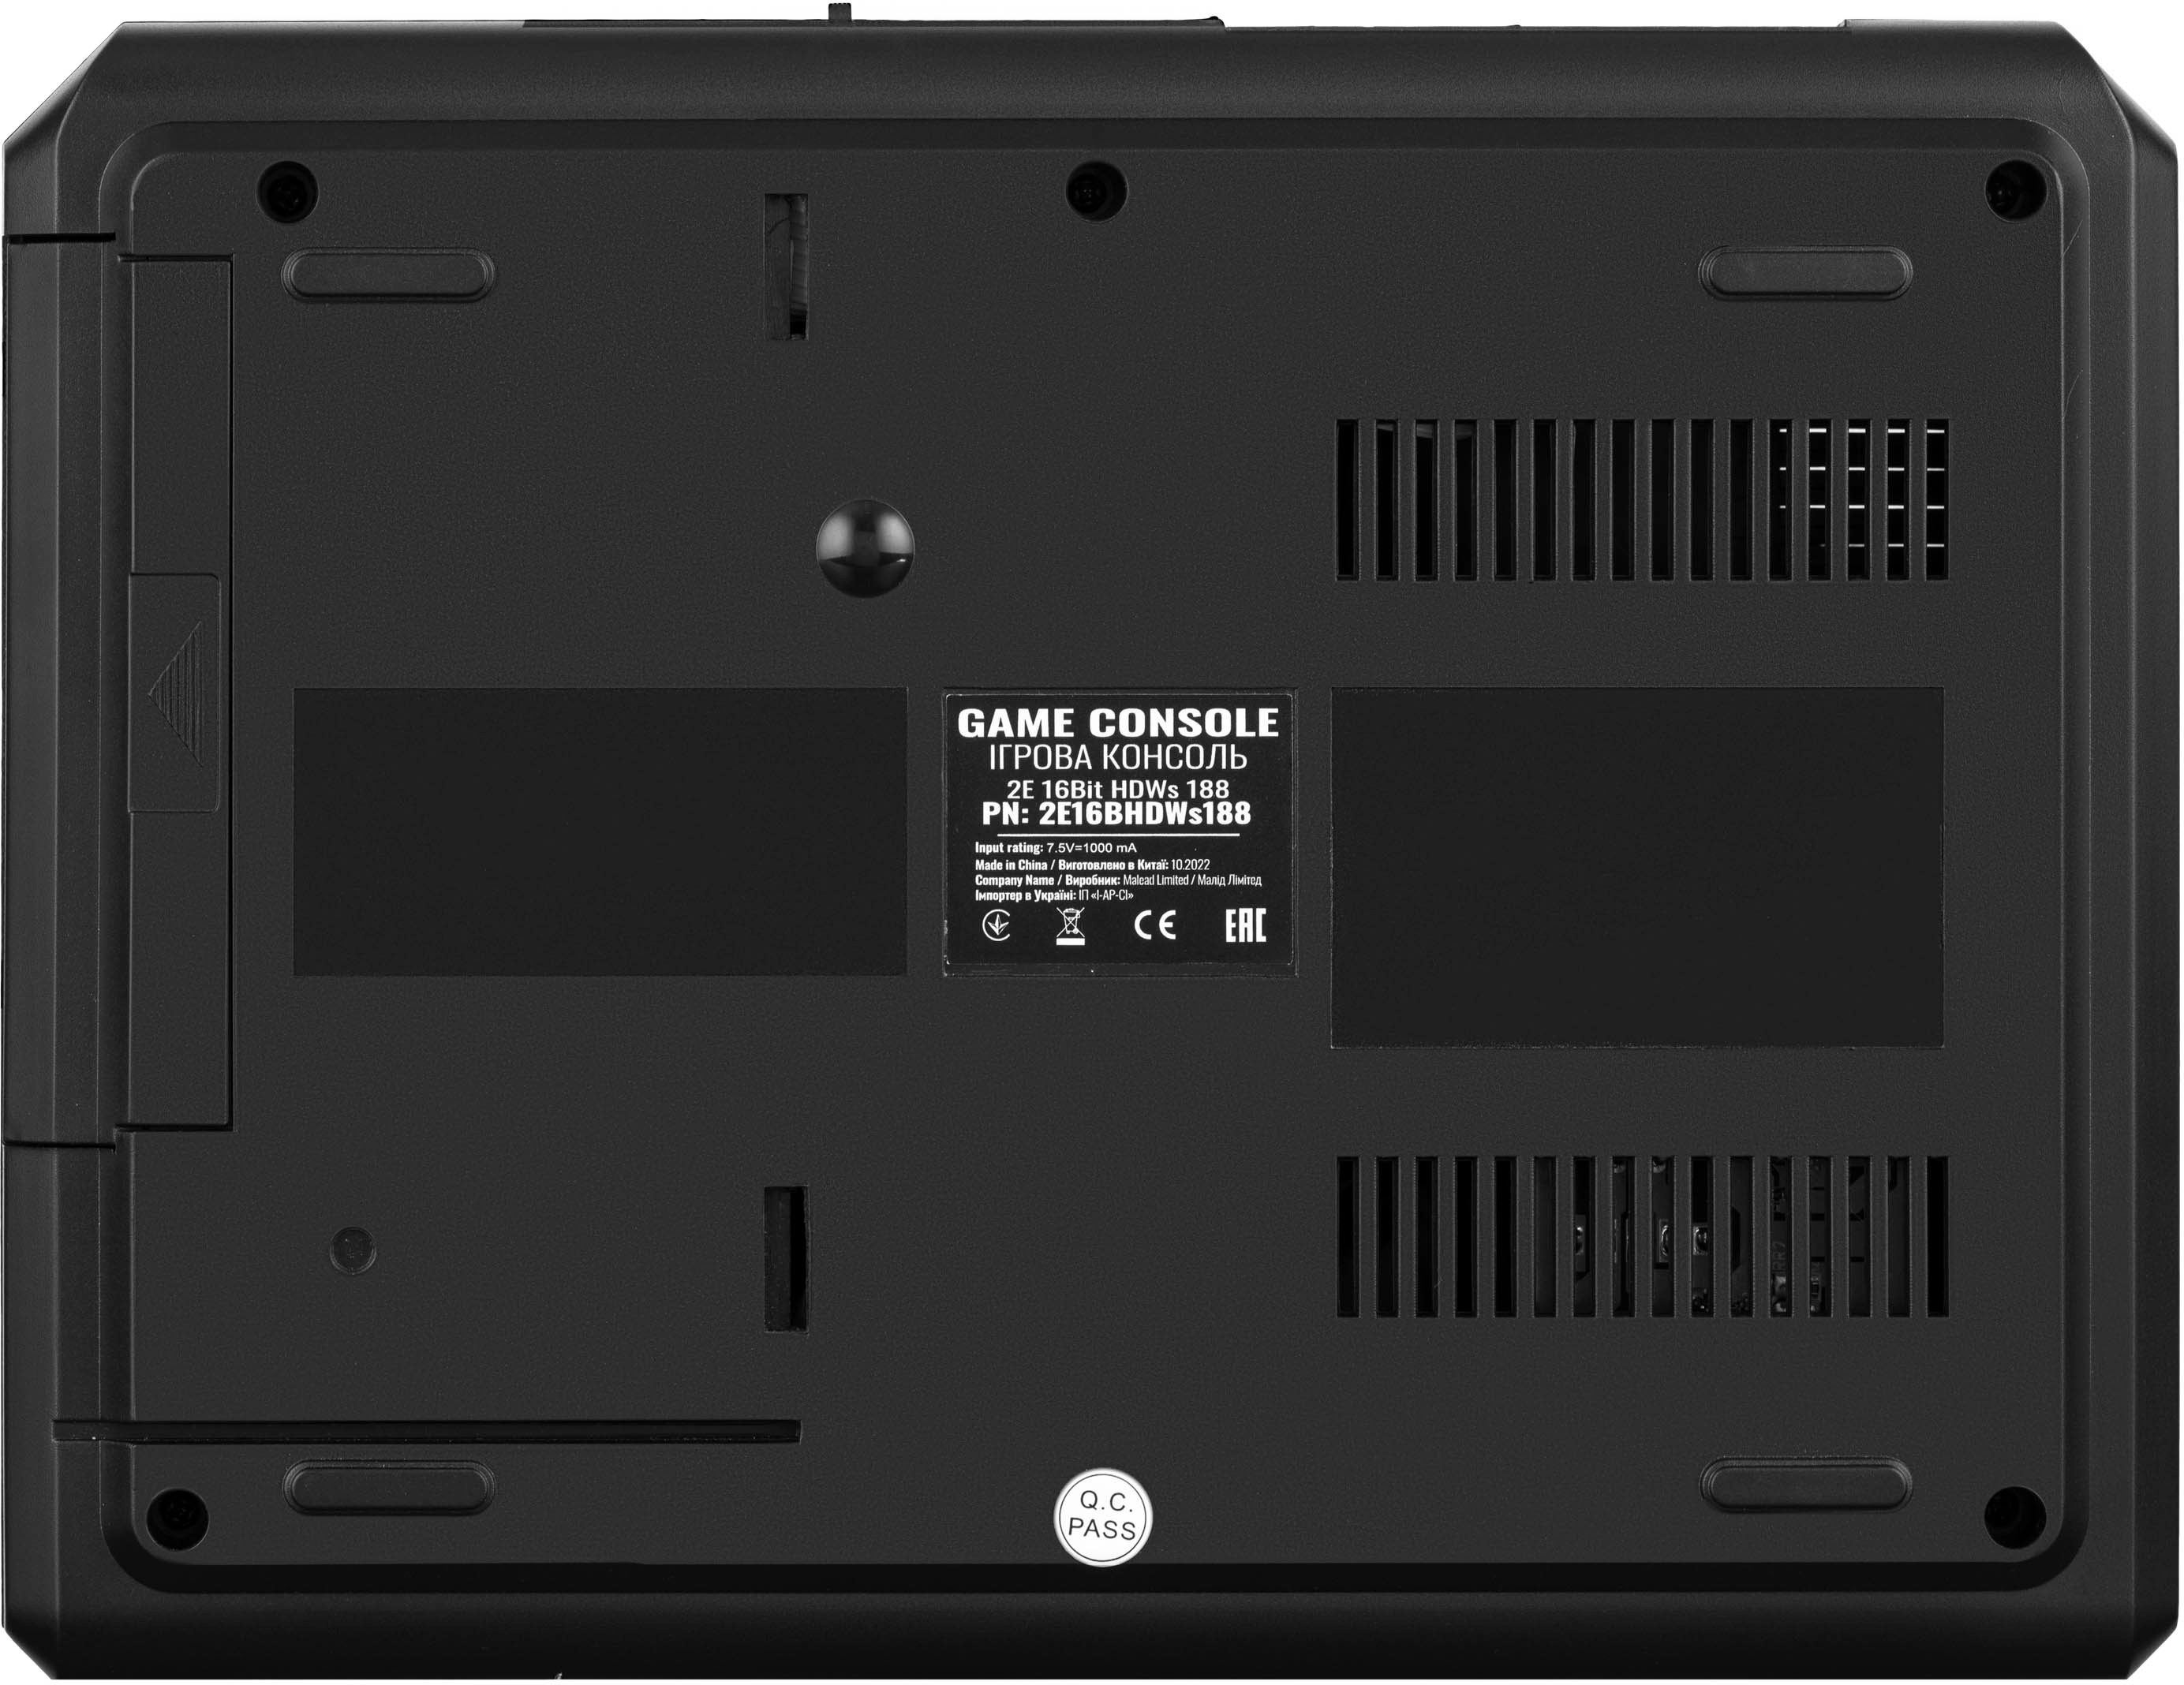 Игровая консоль 2Е 16bit c 2 беспроводными геймпада, HDMI 183 игры (2E16BHDWS188) фото 6